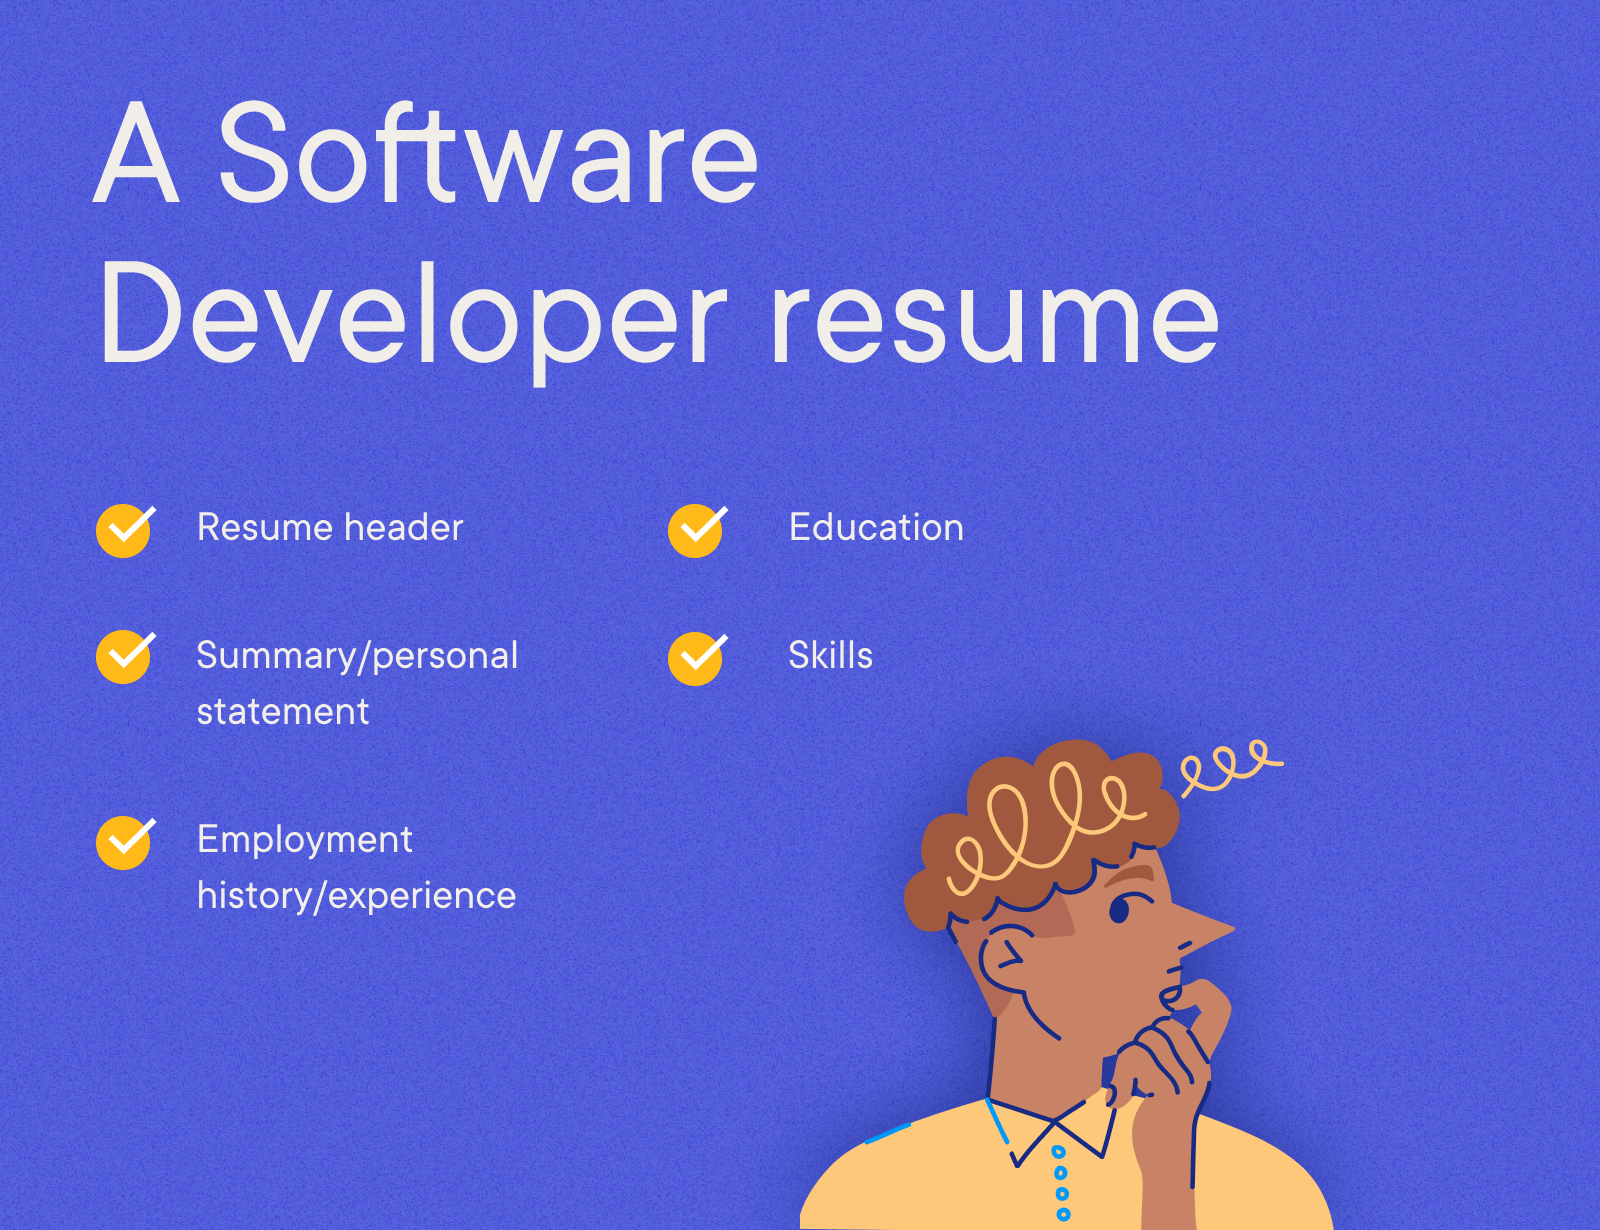 Software Developer - A Software Developer resume